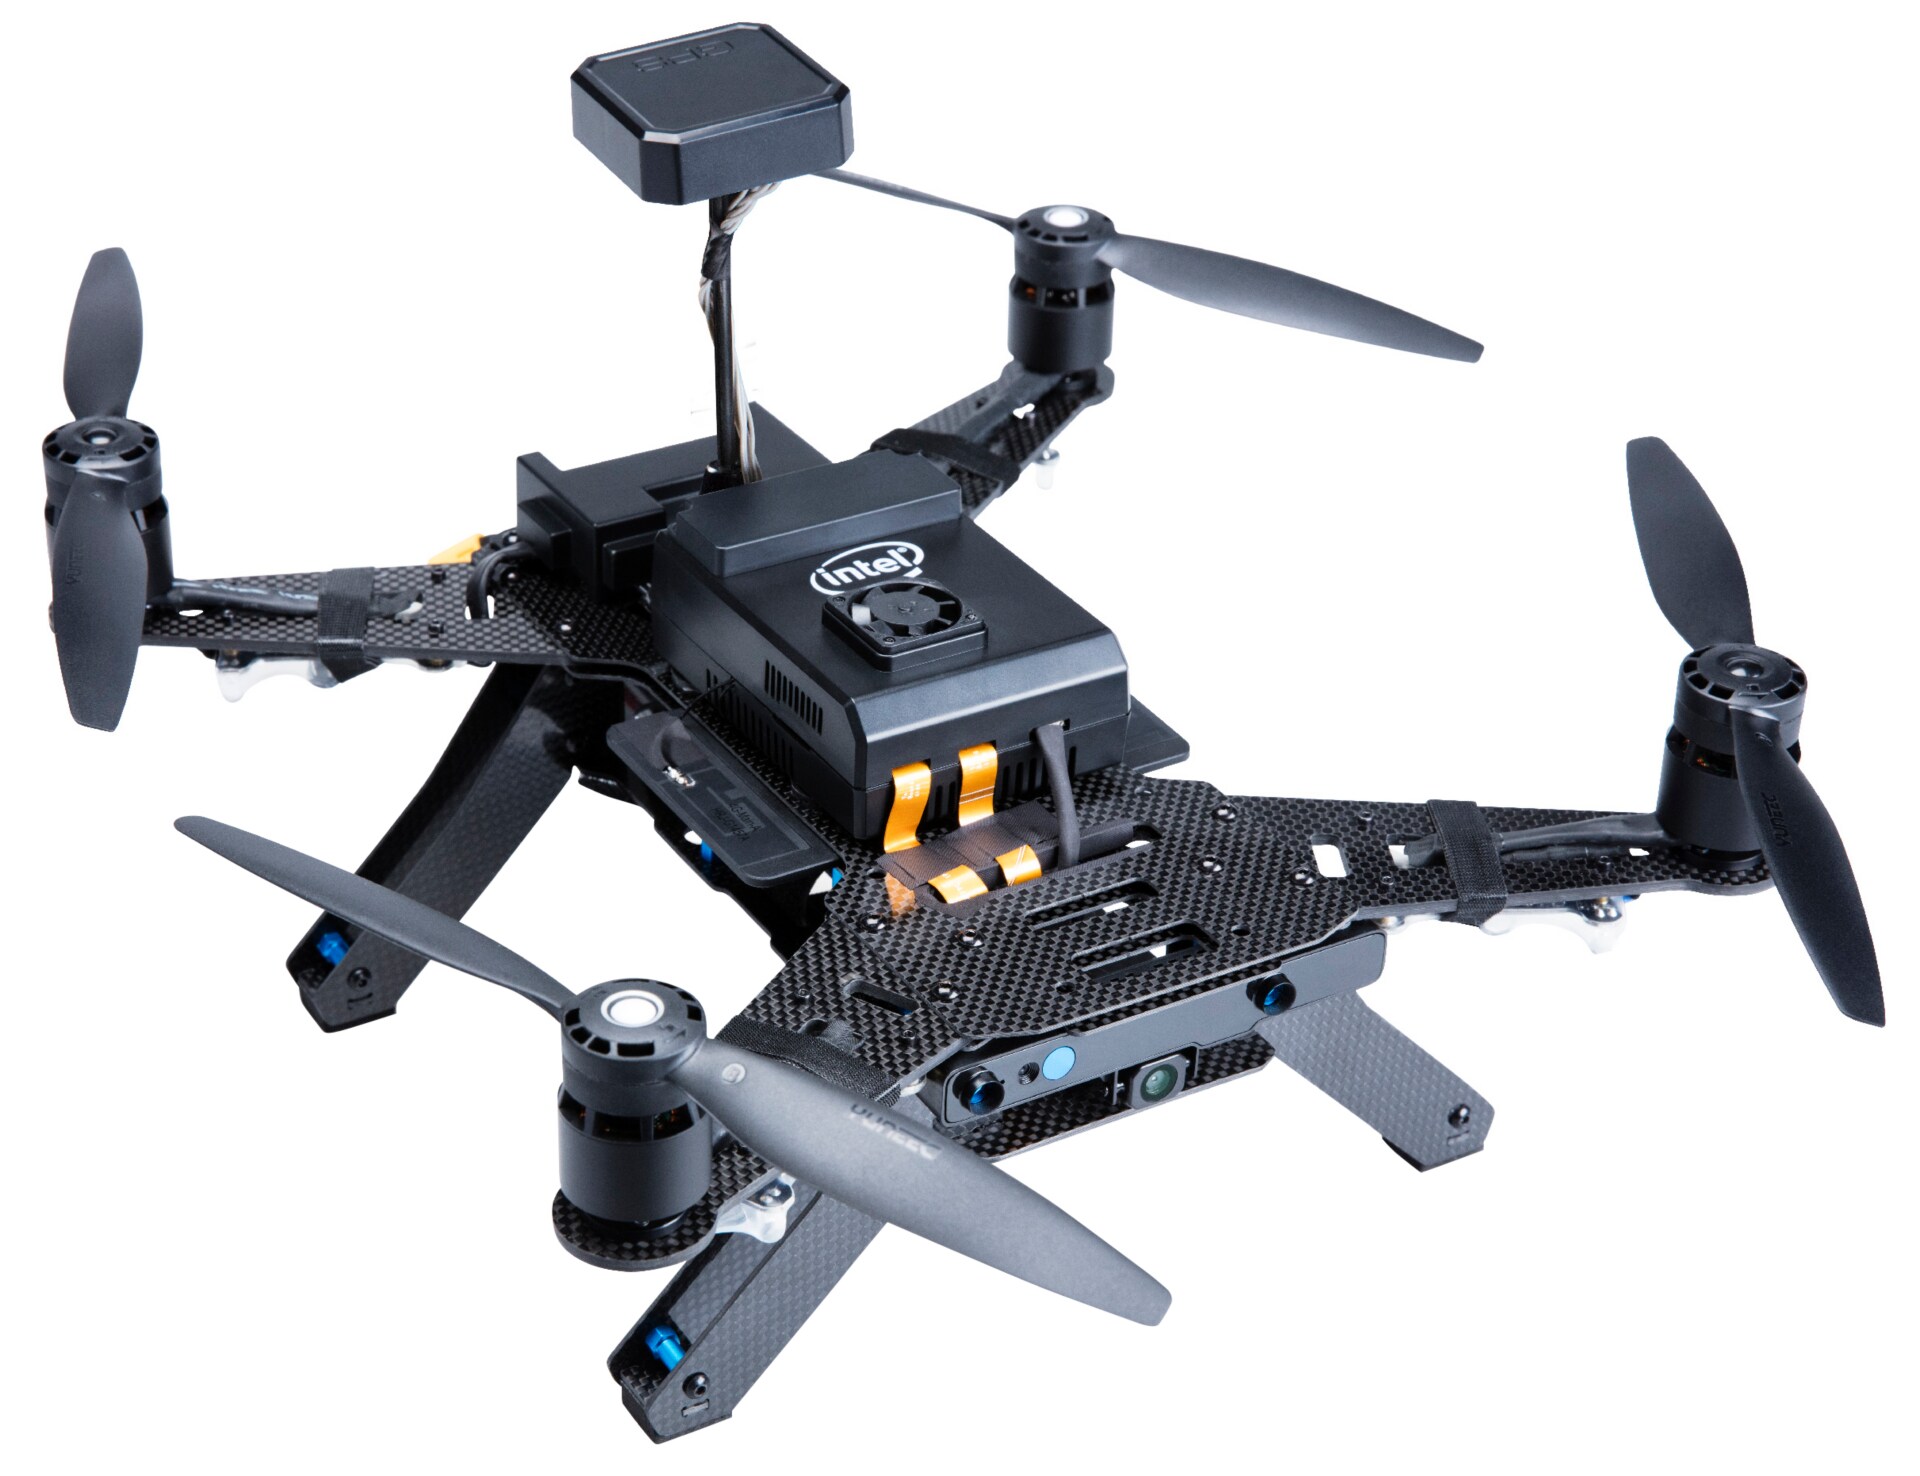 Intel - Aero Ready to Fly Drone